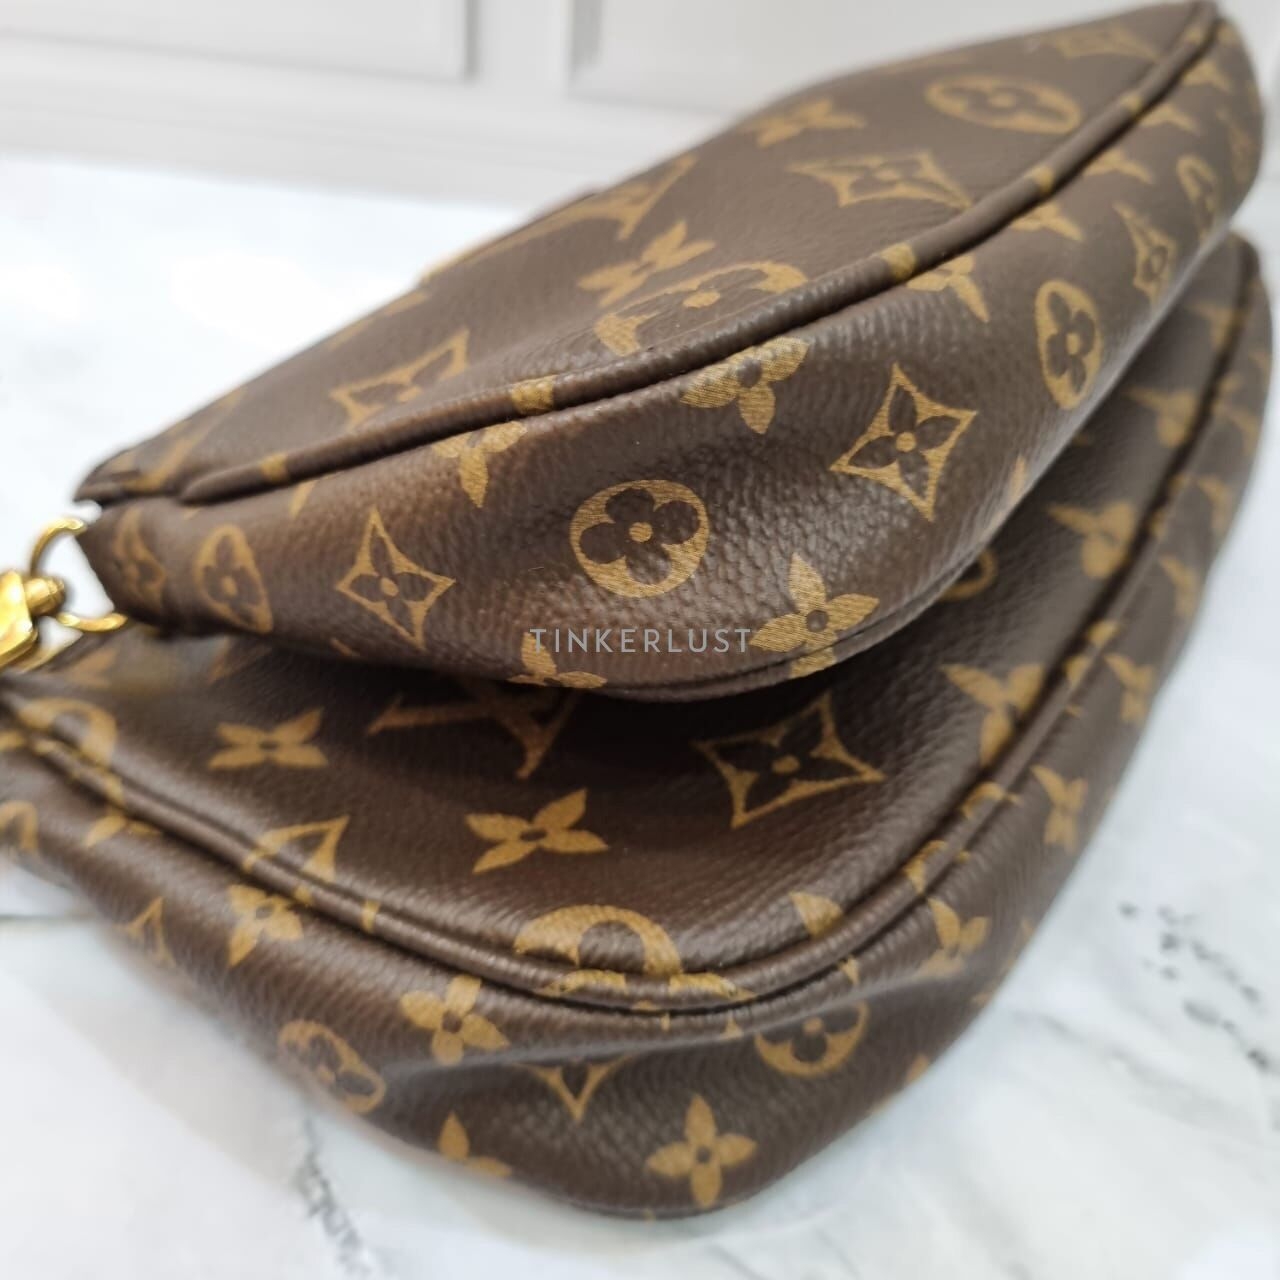 Louis Vuitton Multi Pochette Monogram Khaki Canvas GHW 2019 Shoulder Bag